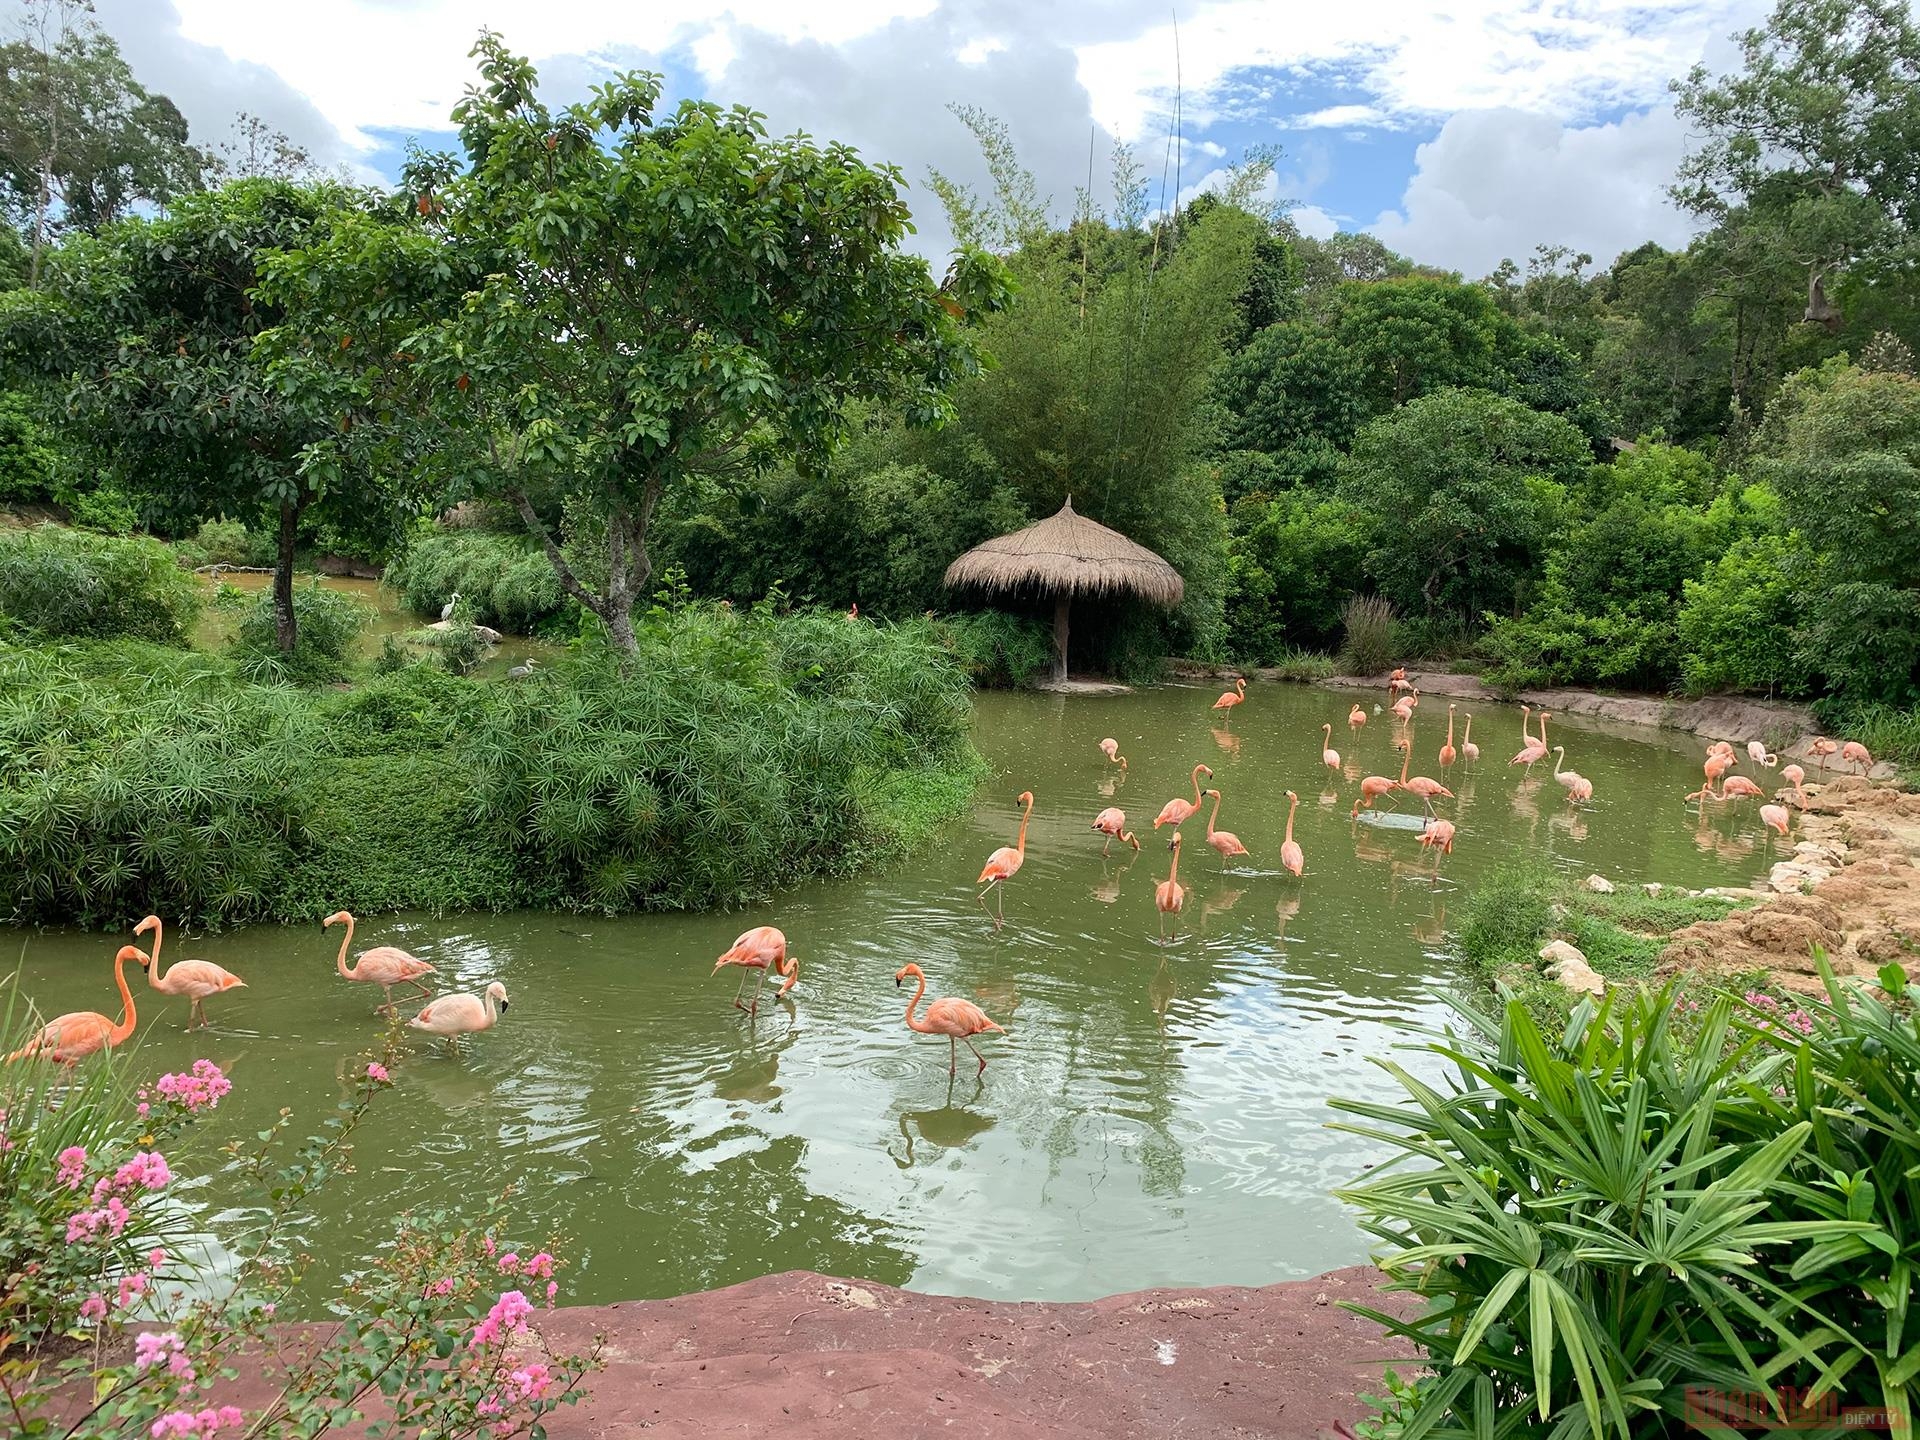 Flamingos attract visitors at the entrance to Safari